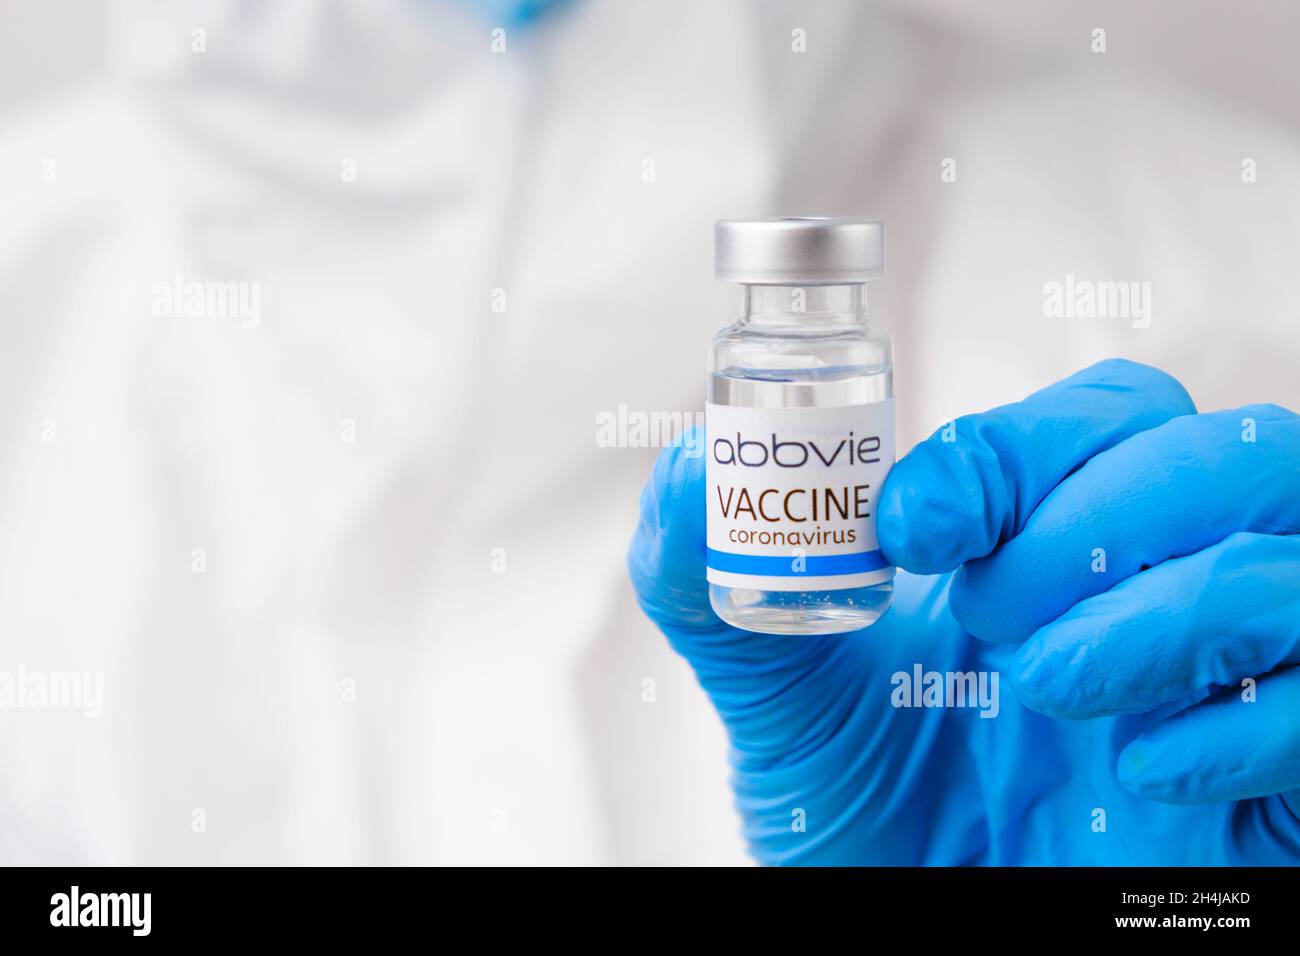 Vaccino Abbvie contro Covid-19, coronavirus o SARS-Cov-2 in mano medica in guanti di gomma, marzo 2021, San Francisco, USA Foto Stock